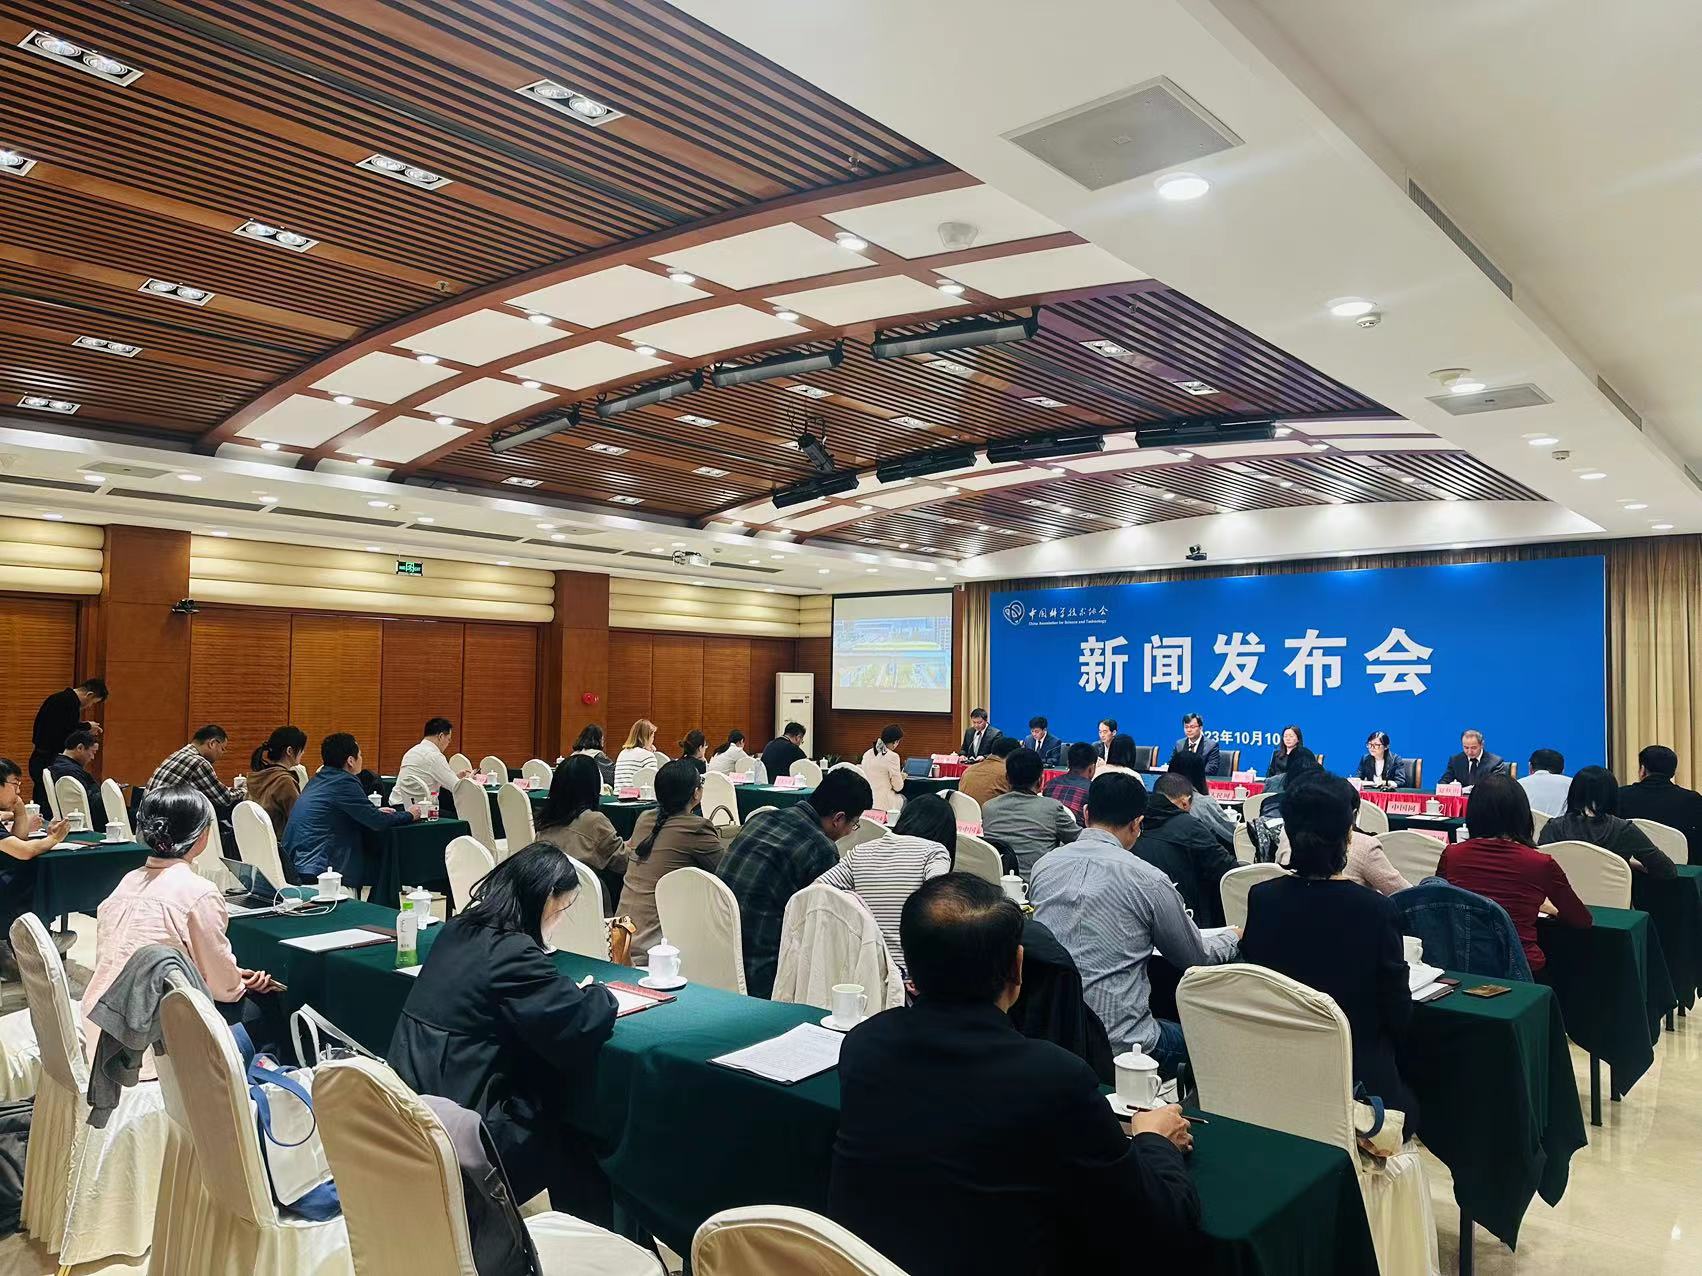 第二十五届中国科协年会将在安徽合肥举办